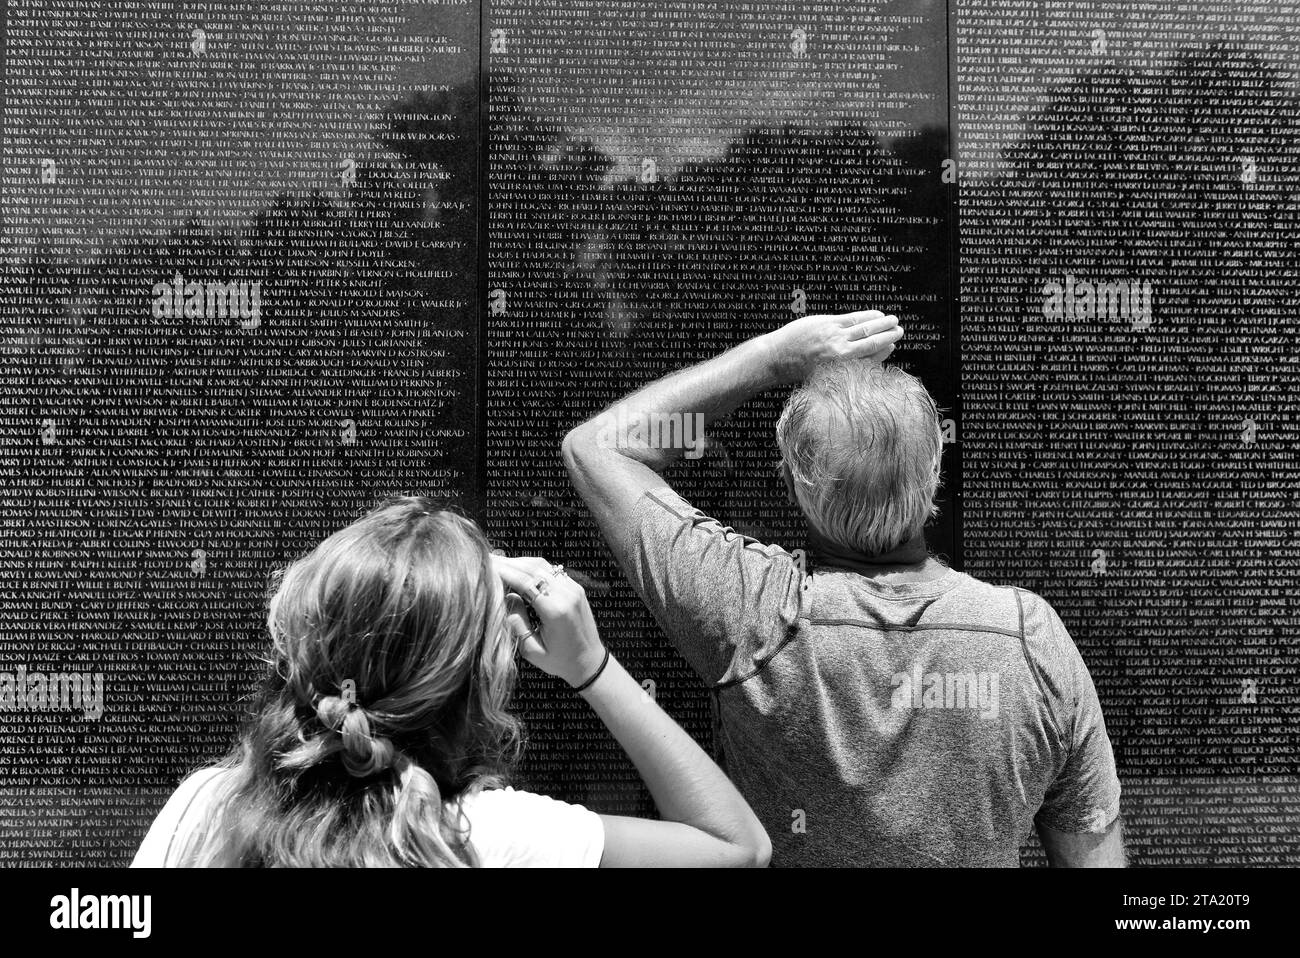 Washington, DC - 01. Juni 2018: Besucher des Vietnam war Memorial in Washington. Stockfoto